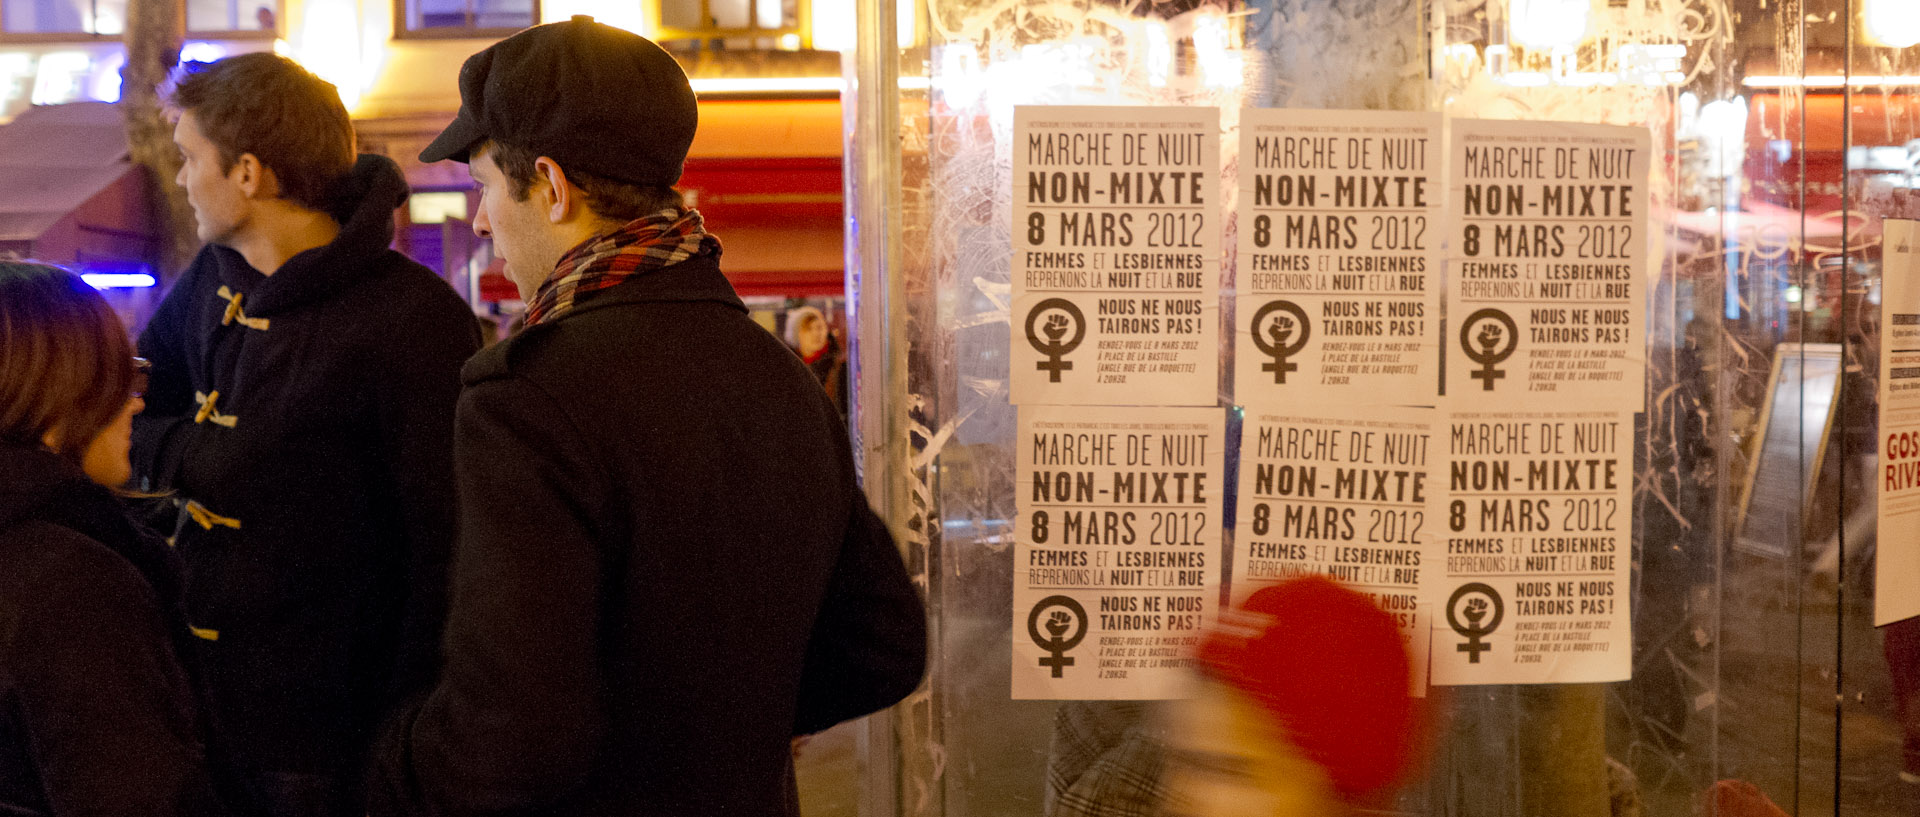 Affichettes pour appeler à une manifestation de femmes et de lesbiennes pendant la Journée de la femme, rue du Faubourg Saint-Antoine, à Paris.